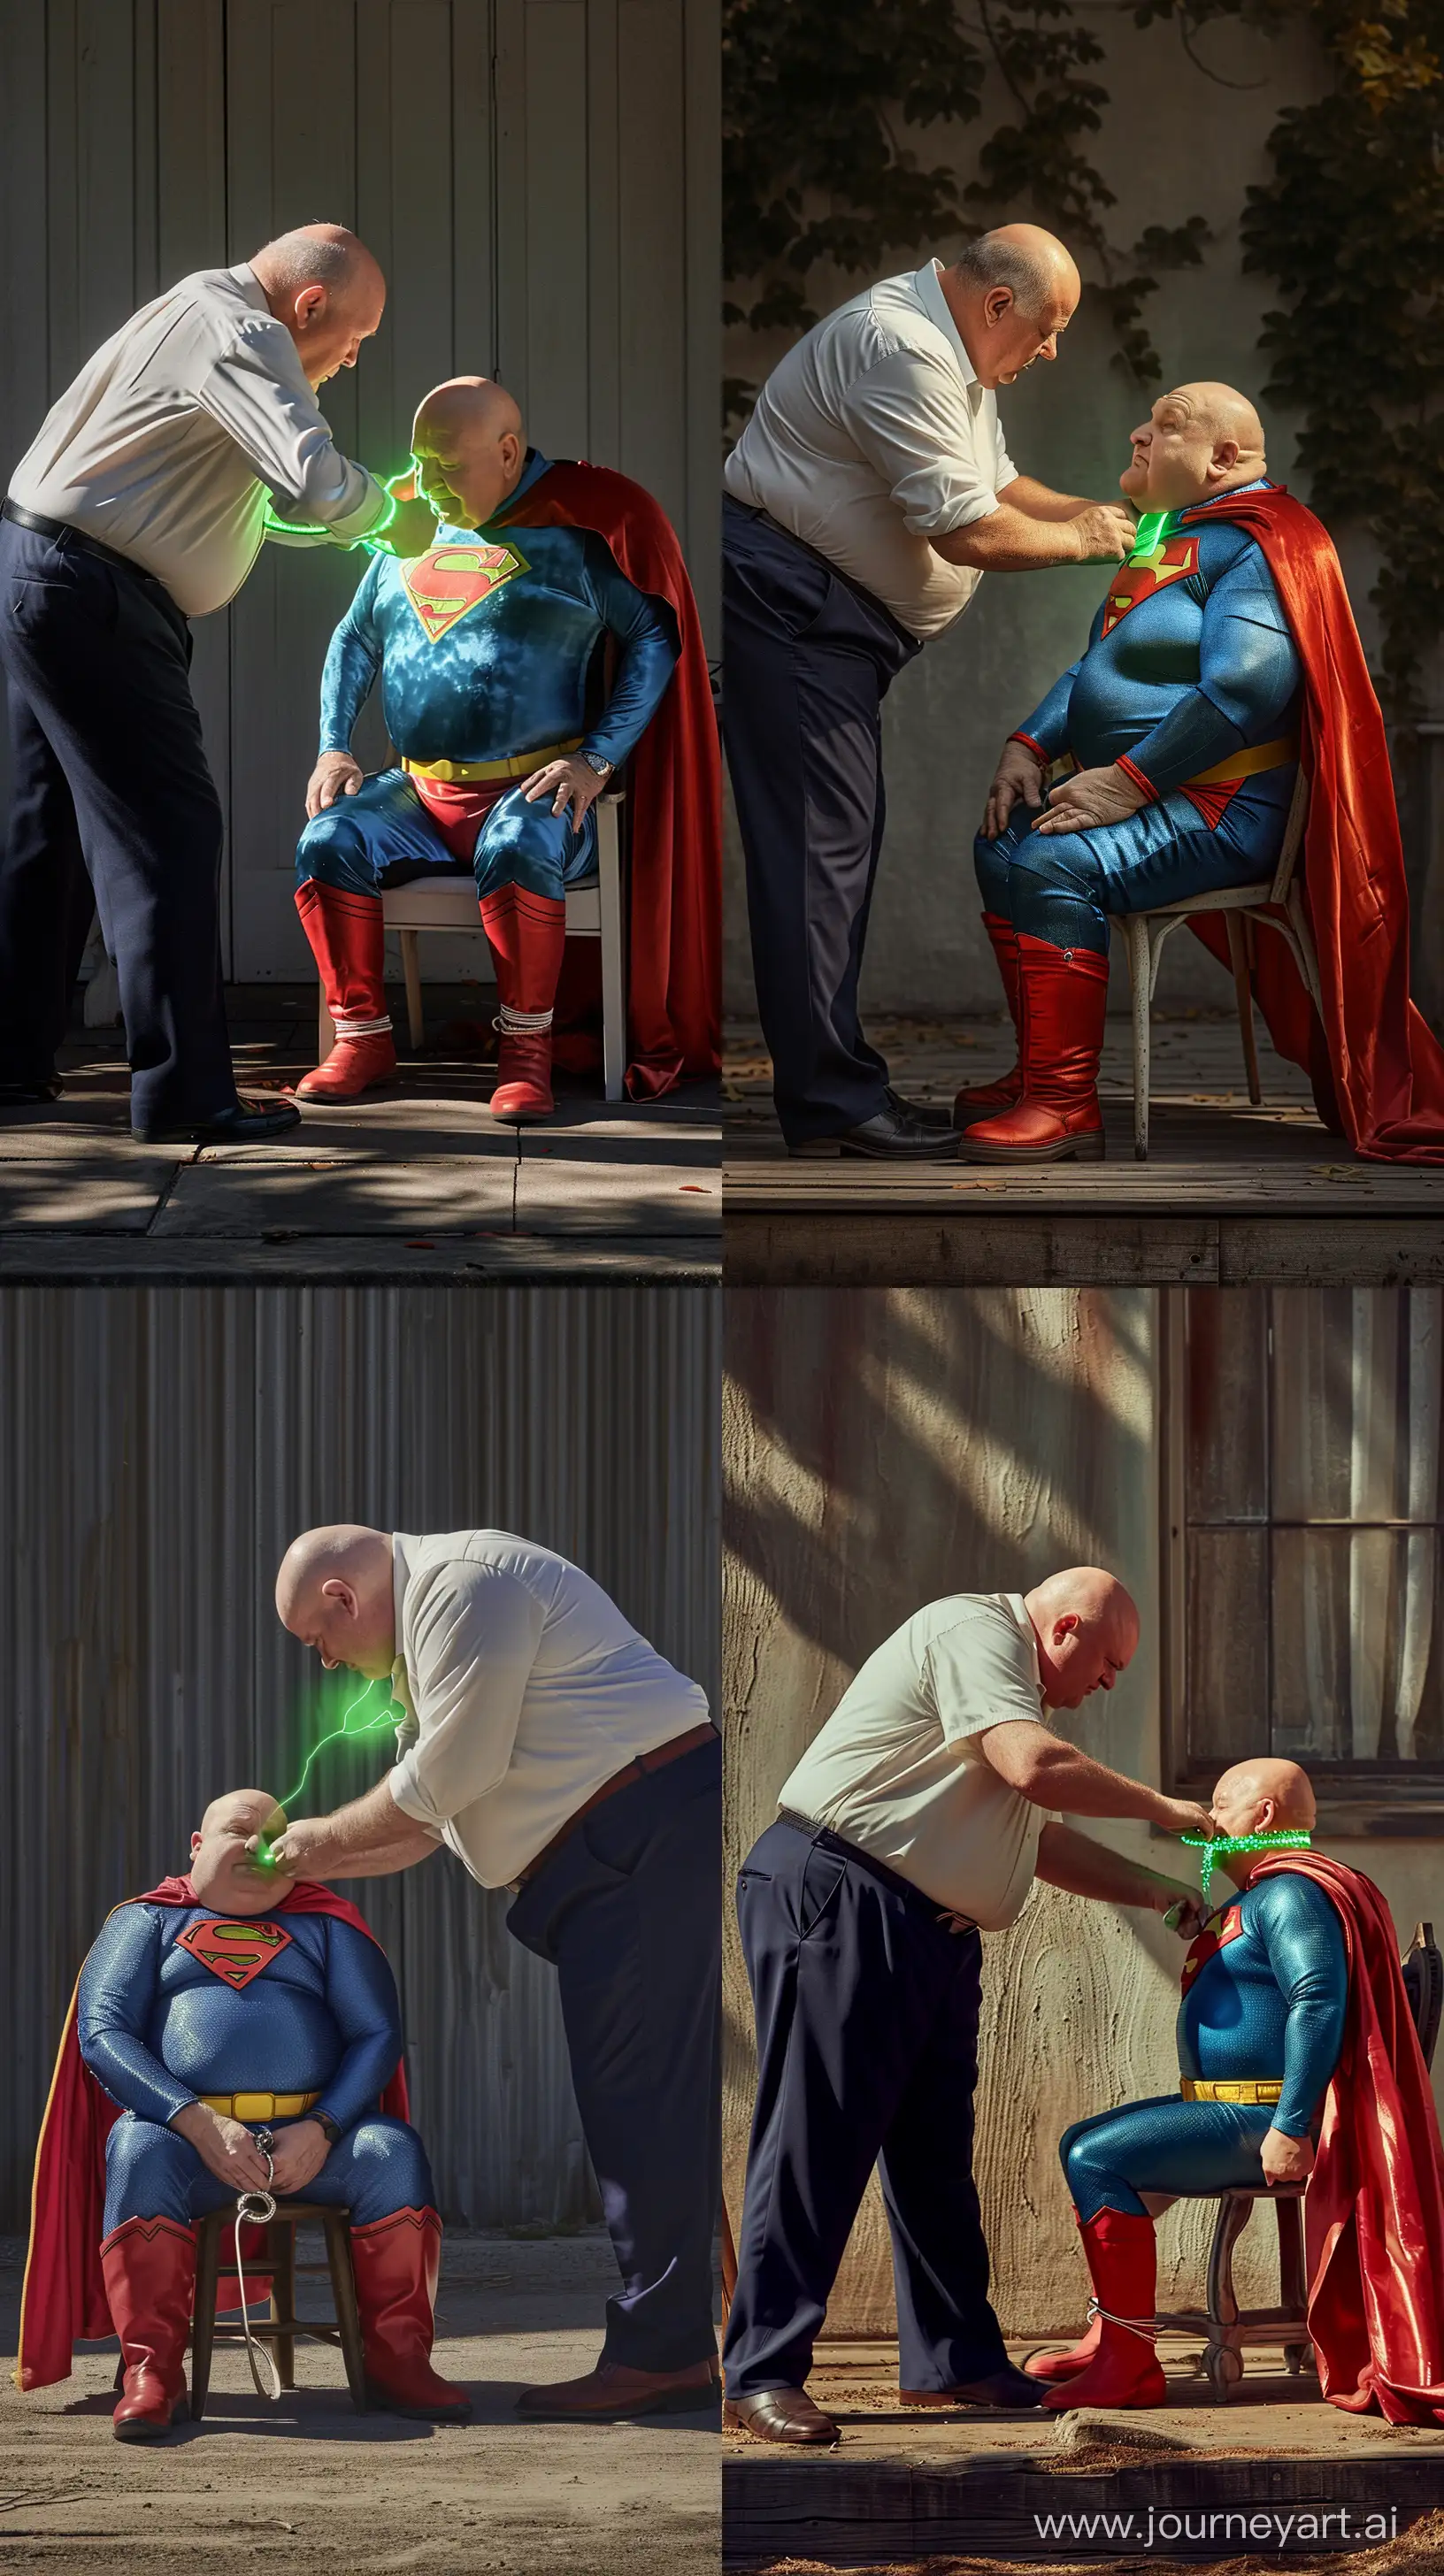 Elderly-Mens-Playful-Superhero-Transformation-Under-Sunlight